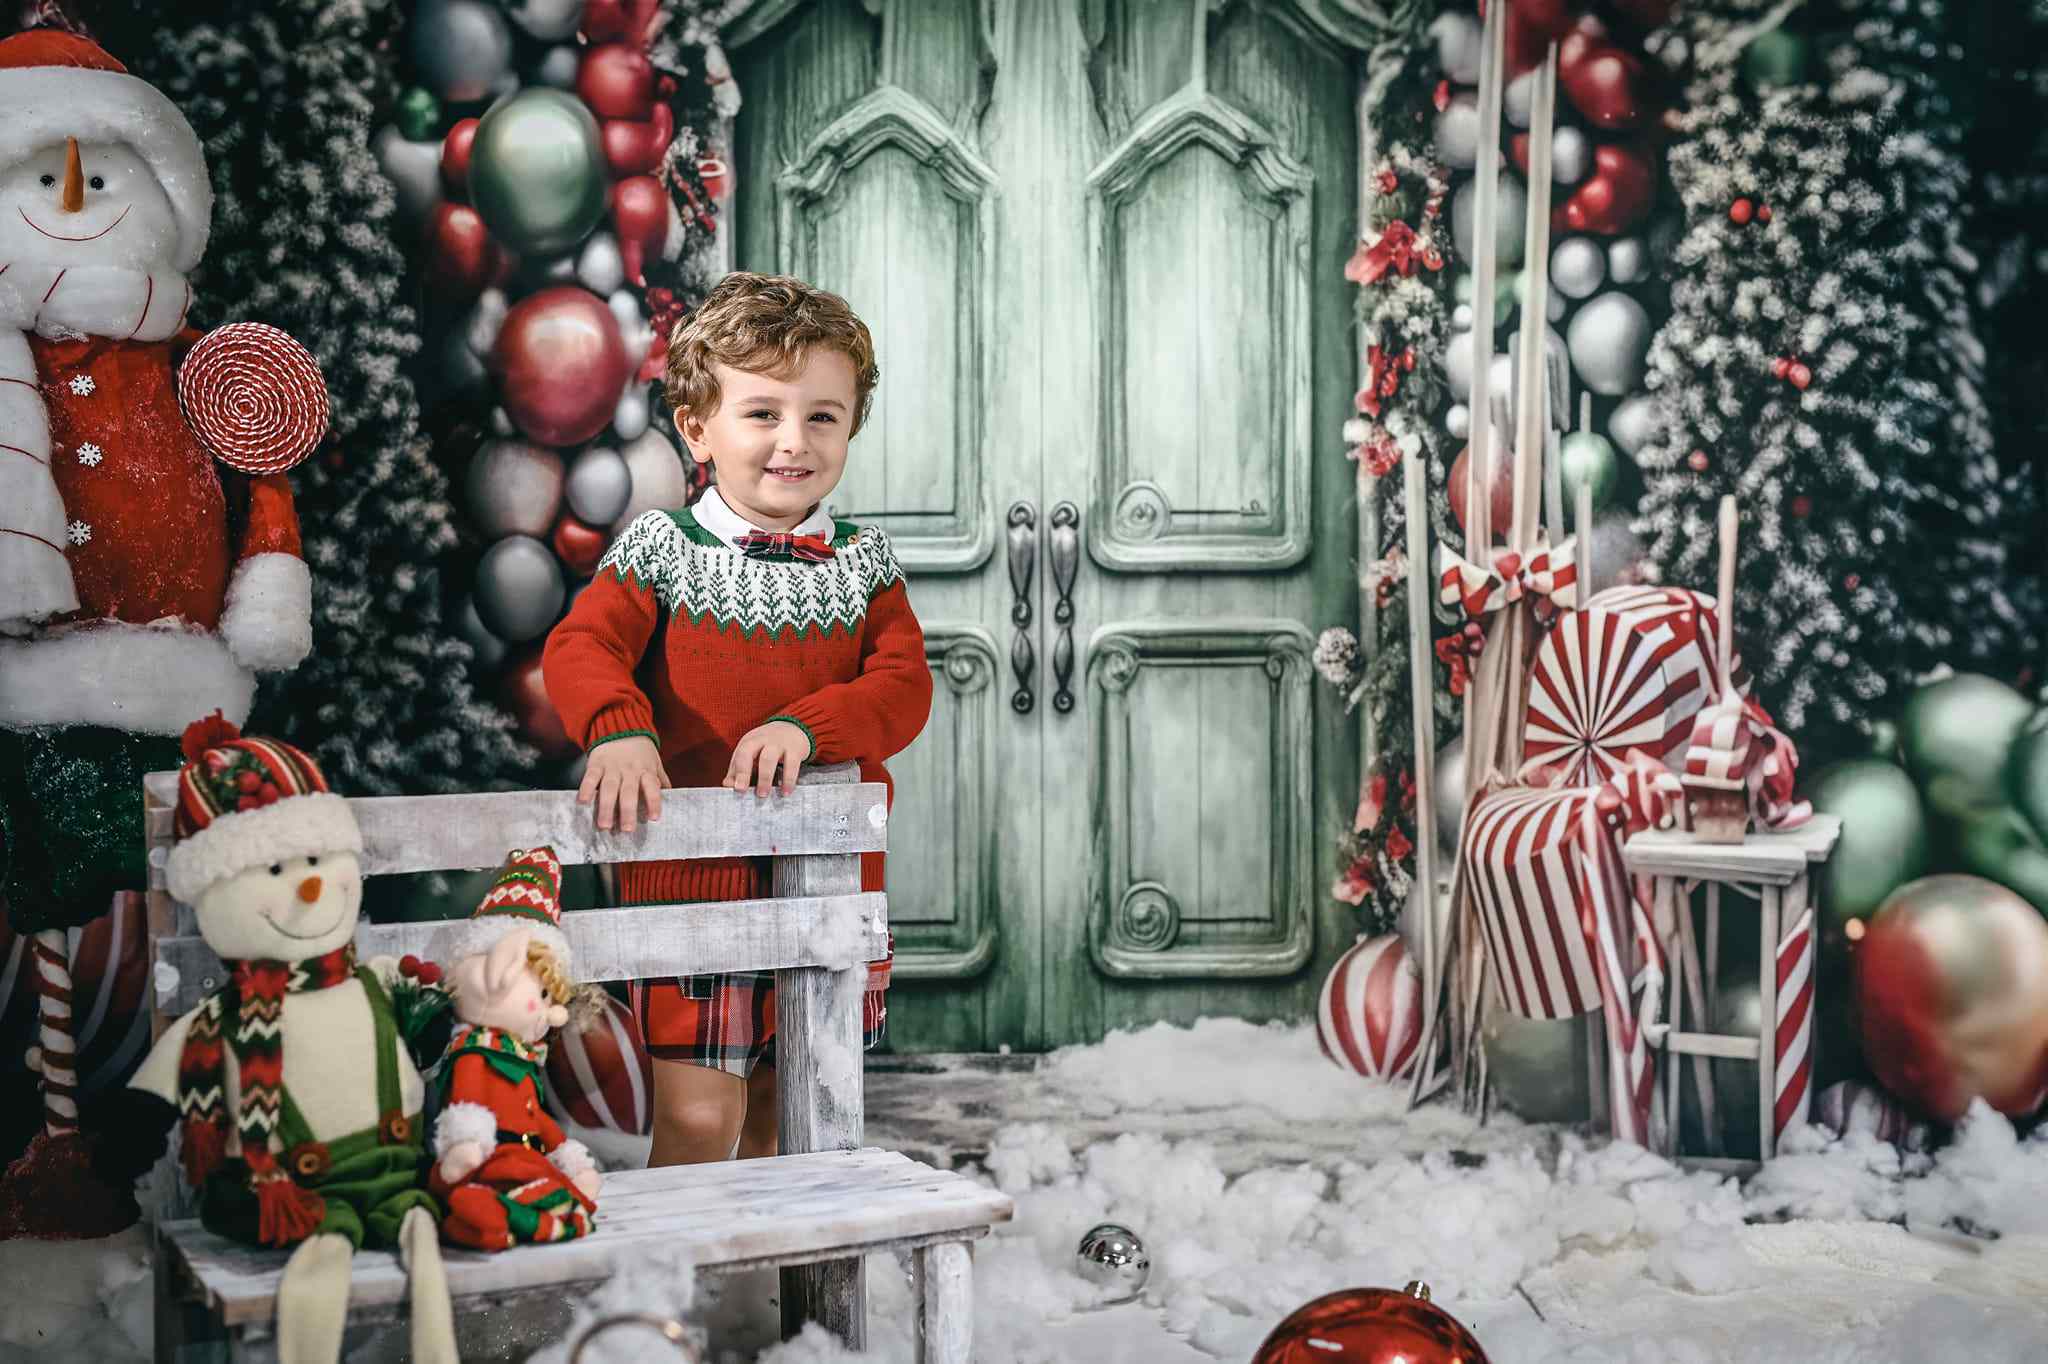 Kate Weihnachten Urlaub Ballon Bogen grüne Tür Hintergrund für Fotografie